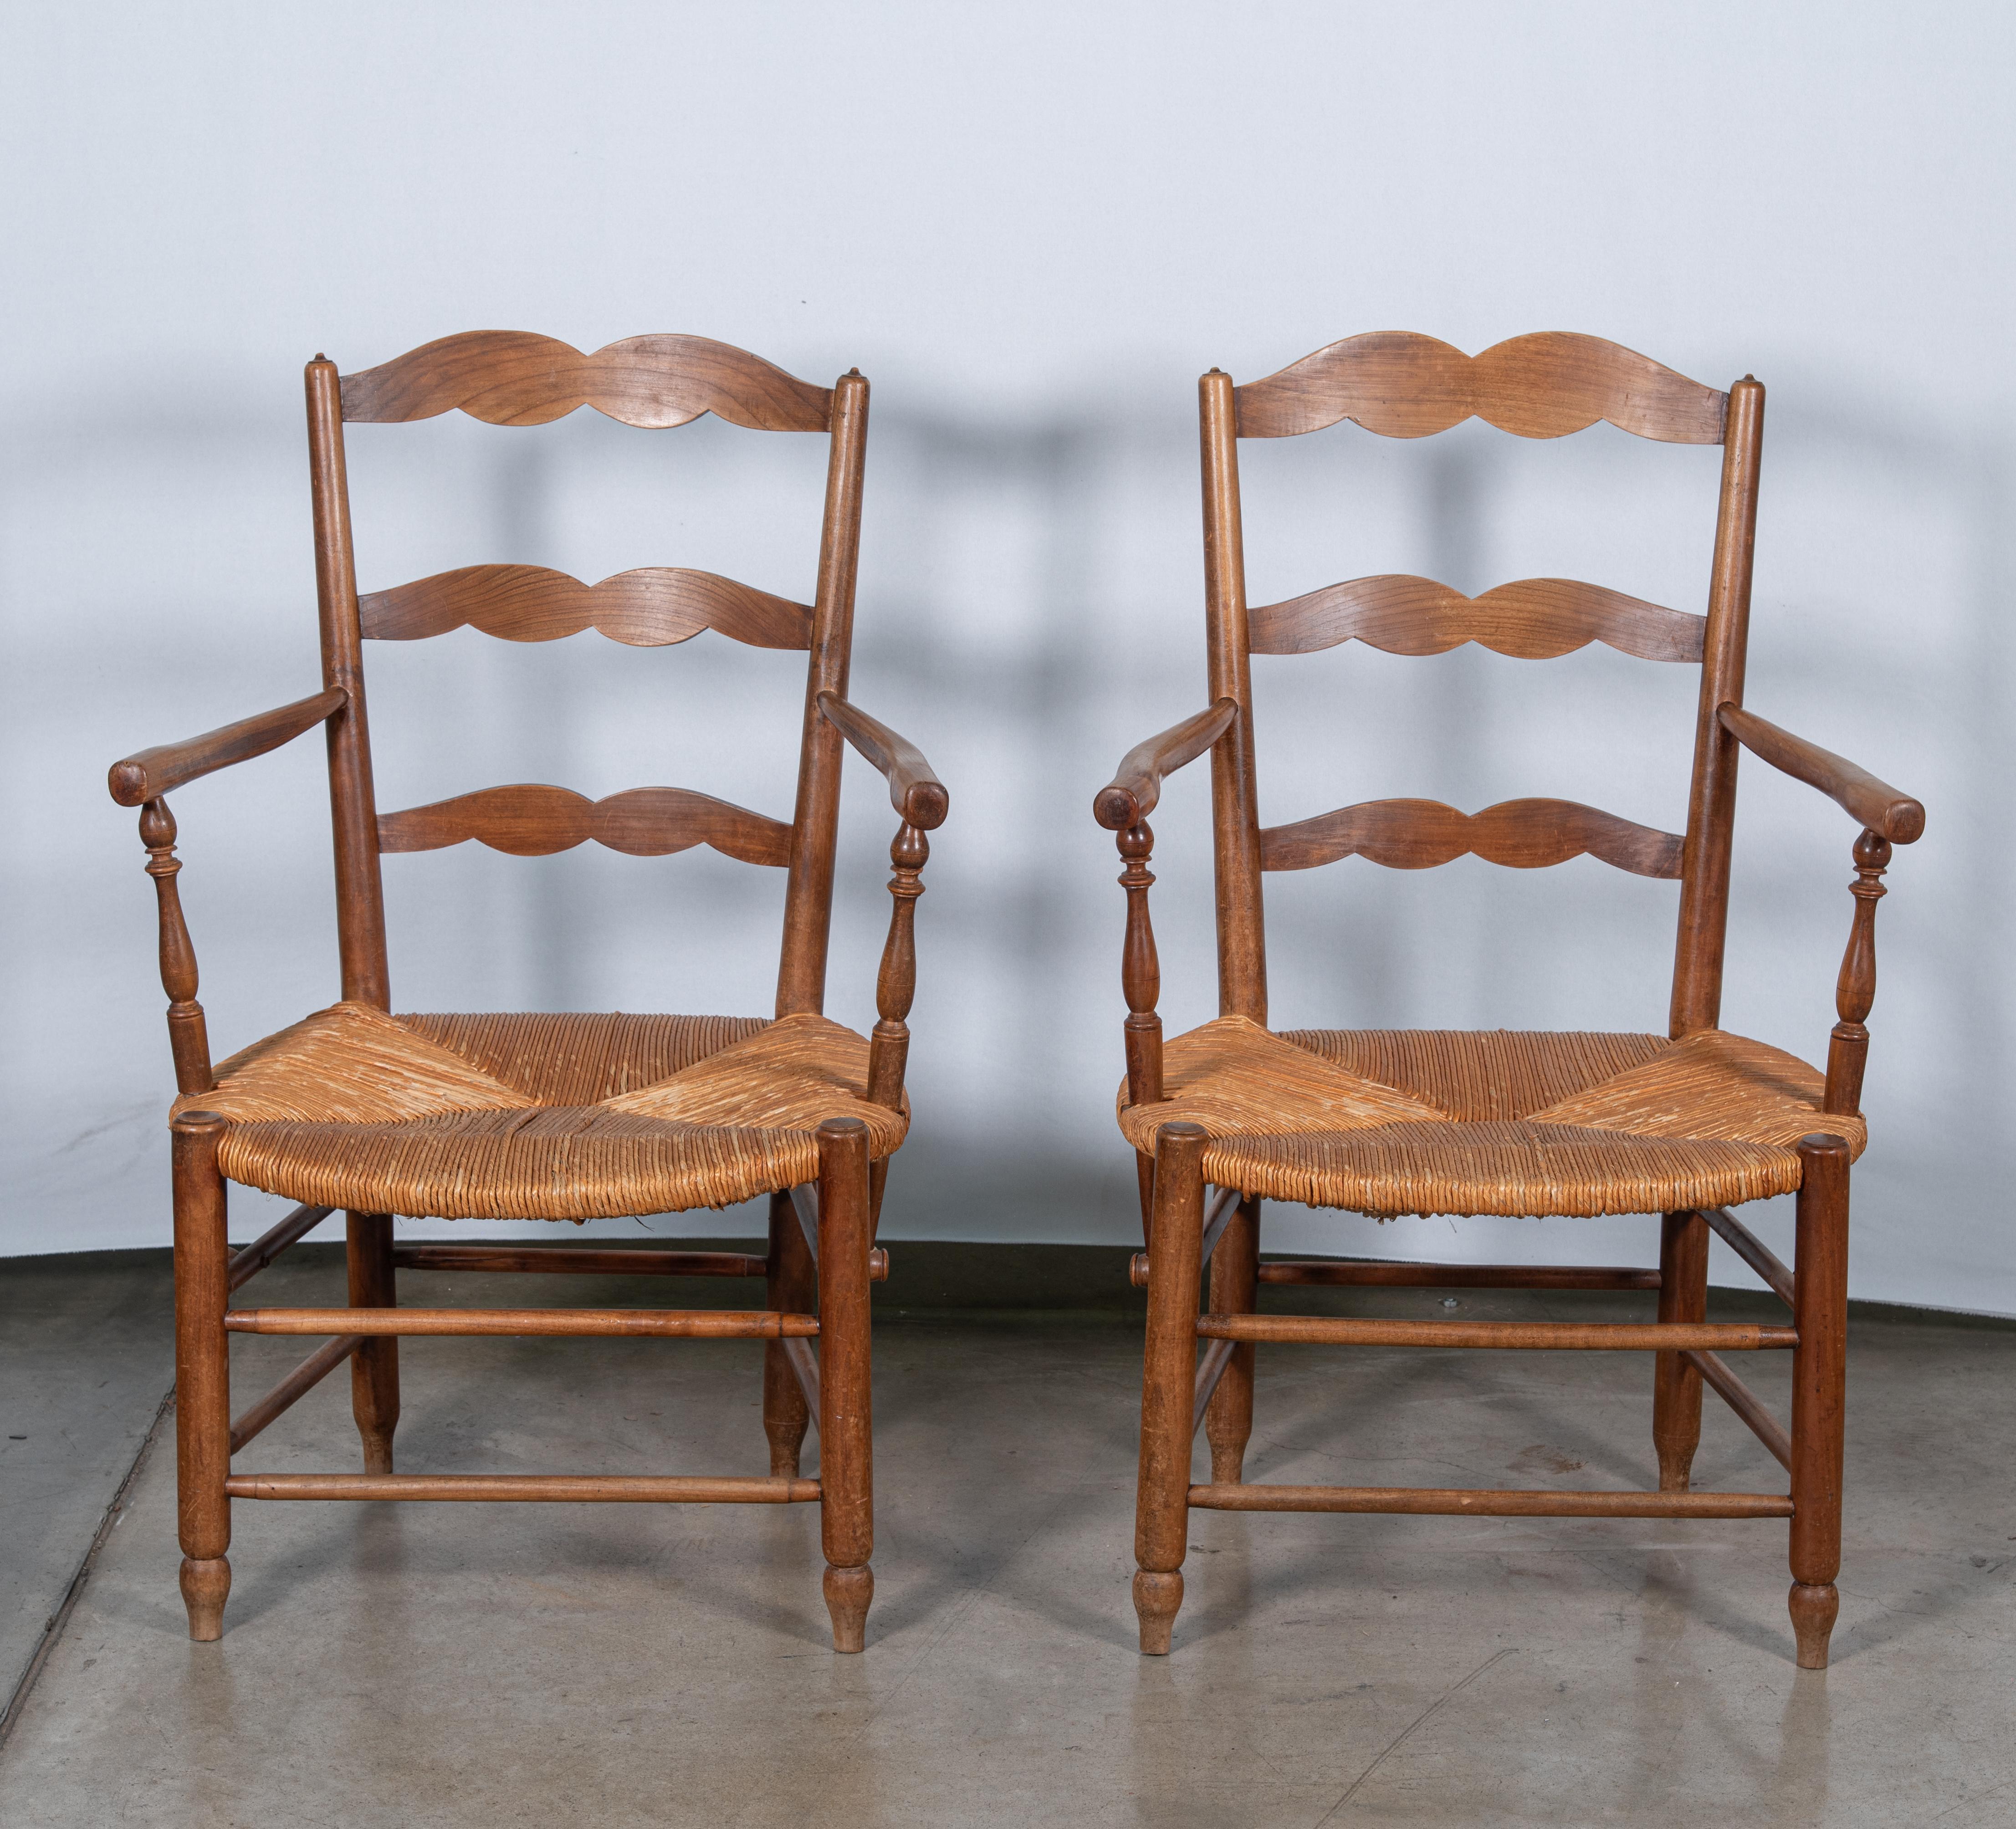 Unser Set aus zwei Sesseln im französischen Landhausstil des 19. Jahrhunderts, die sorgfältig aus haltbarem Eichenholz und geflochtenem Rattan gefertigt sind, verleiht Ihrem Zuhause einen rustikalen Charme. Diese Stühle, die die Essenz des